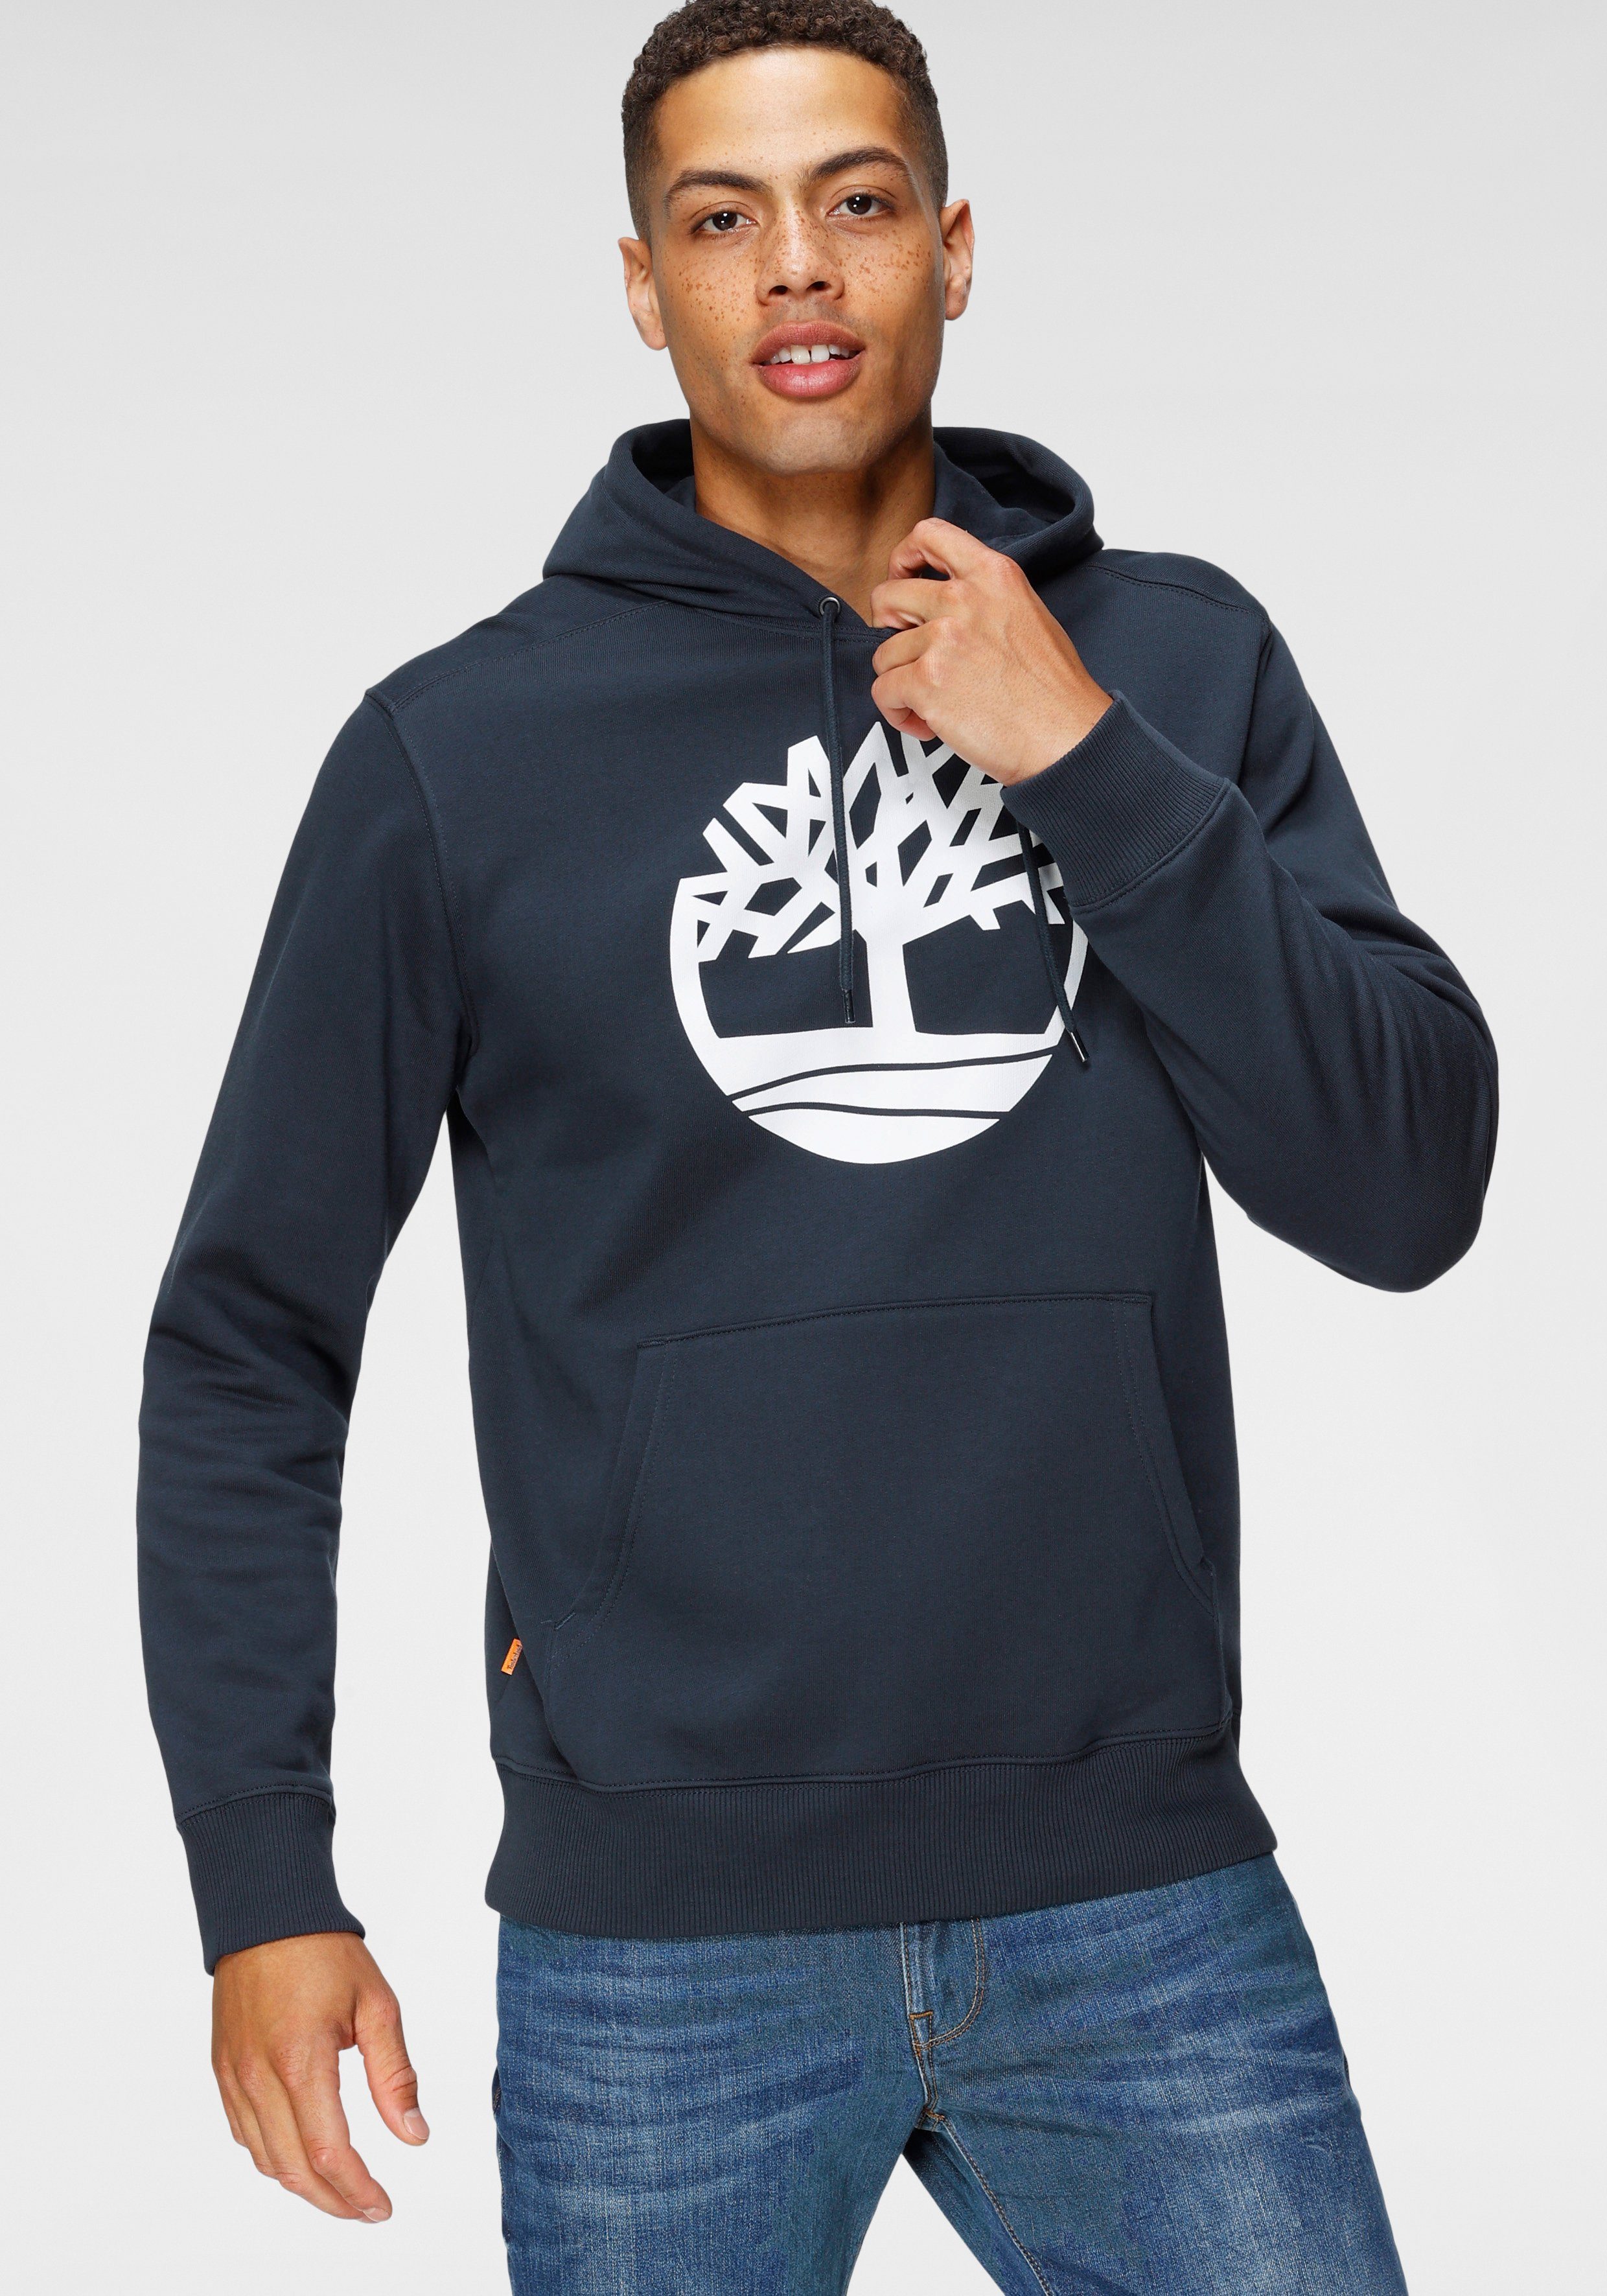 Timberland Sweatshirt online kaufen | OTTO